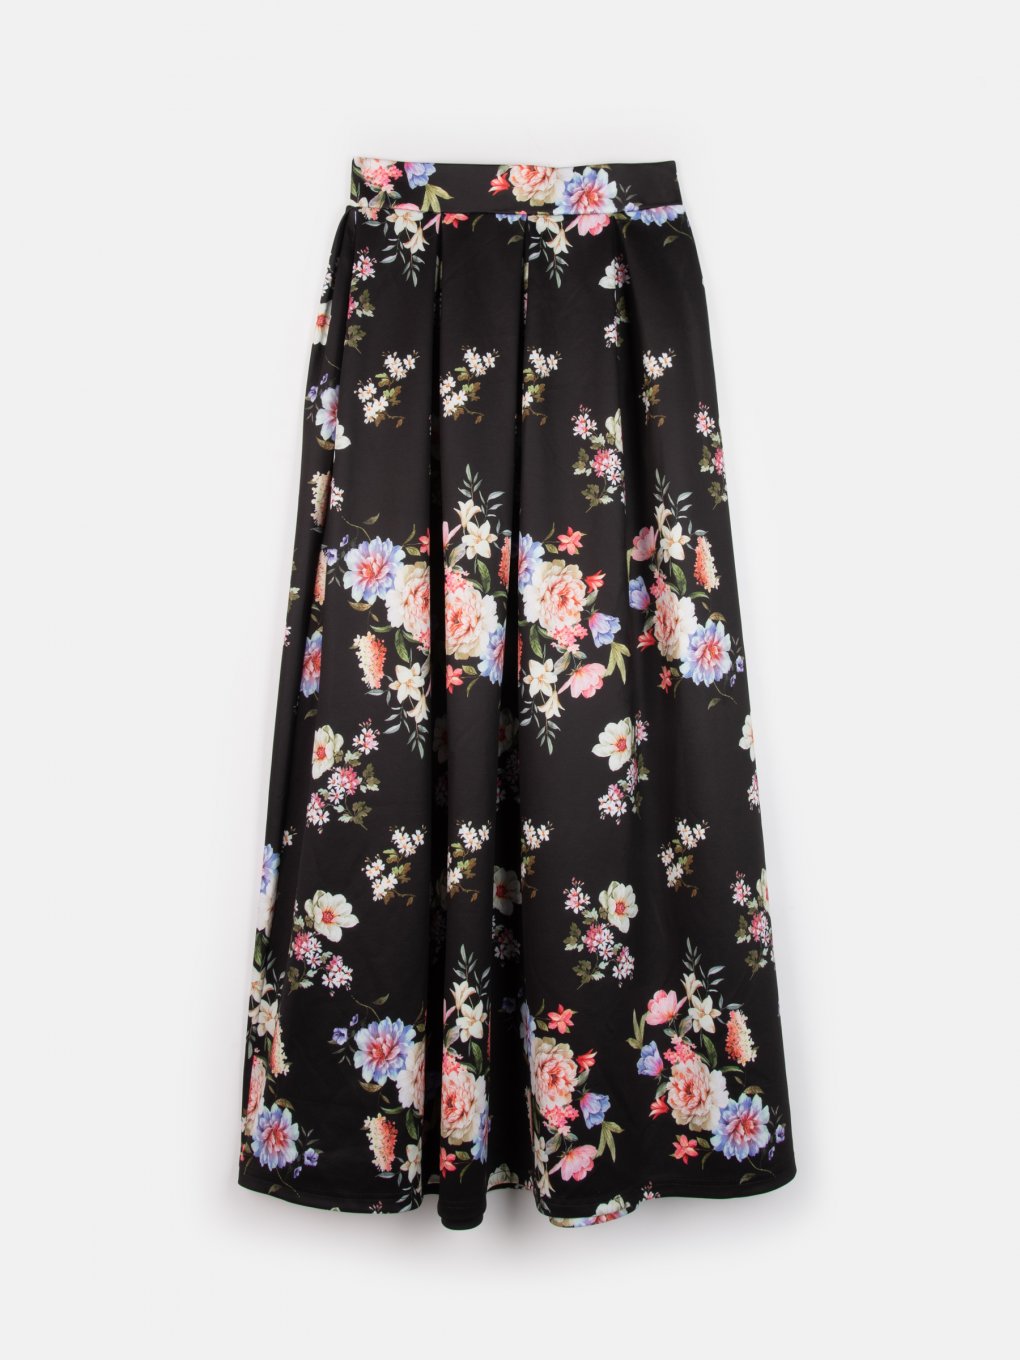 Dlhá sukňa s kvetovanou potlačou